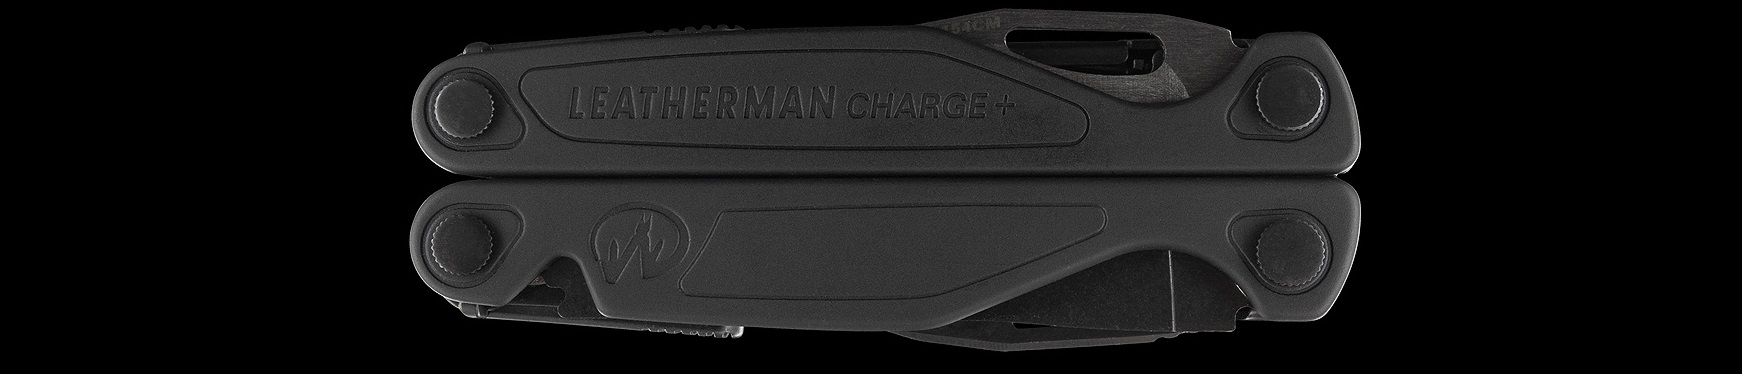 Легкий мультиінструмент Leatherman Charge Plus Black